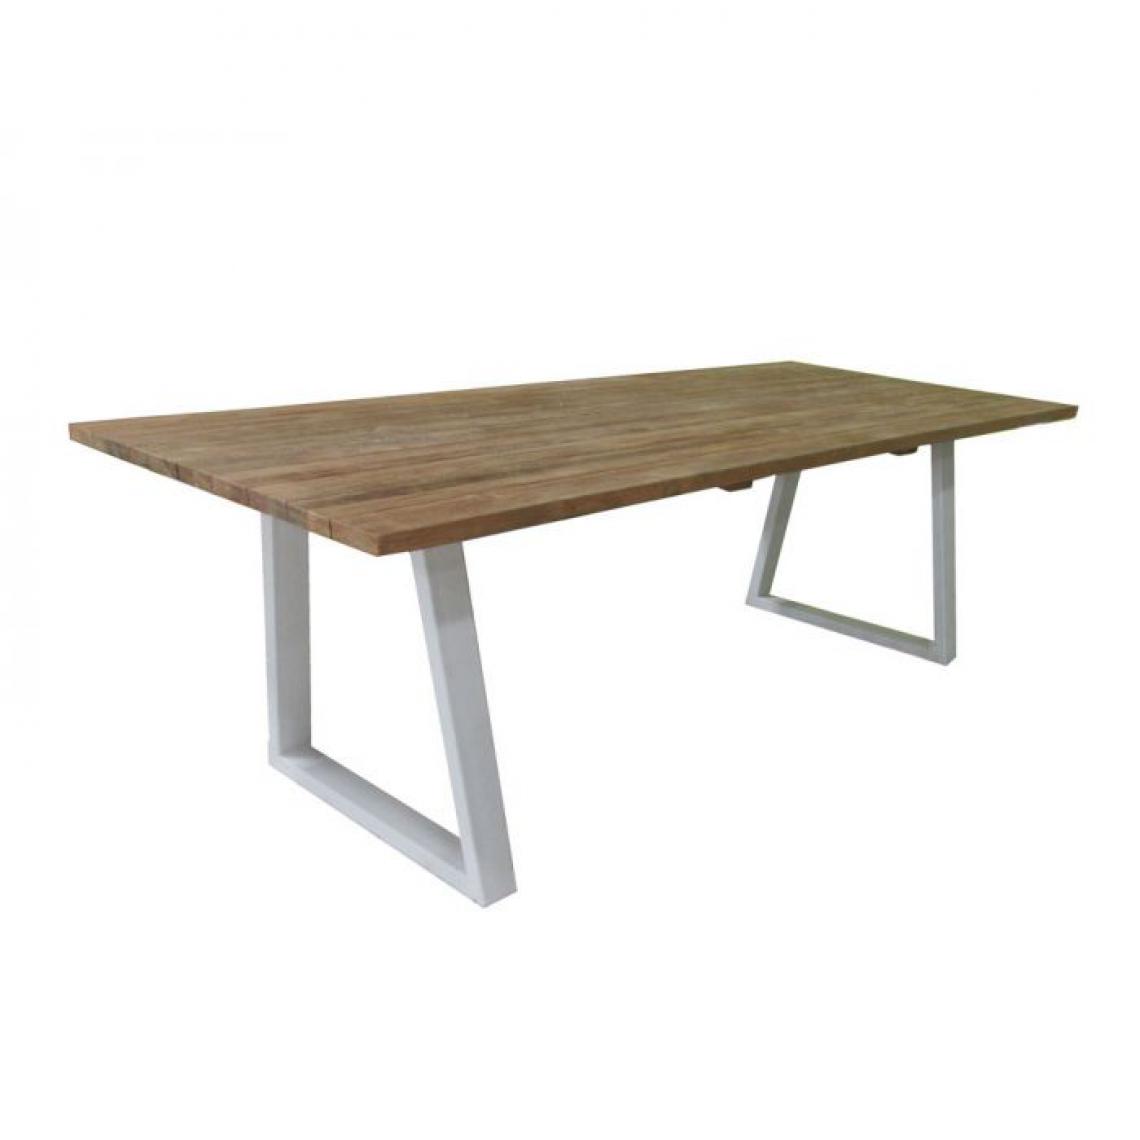 Alter - Table avec pieds en métal et plateau en bois de teck Made in Italy, couleur marron, 220 x 100 x h75 cm - Tables à manger